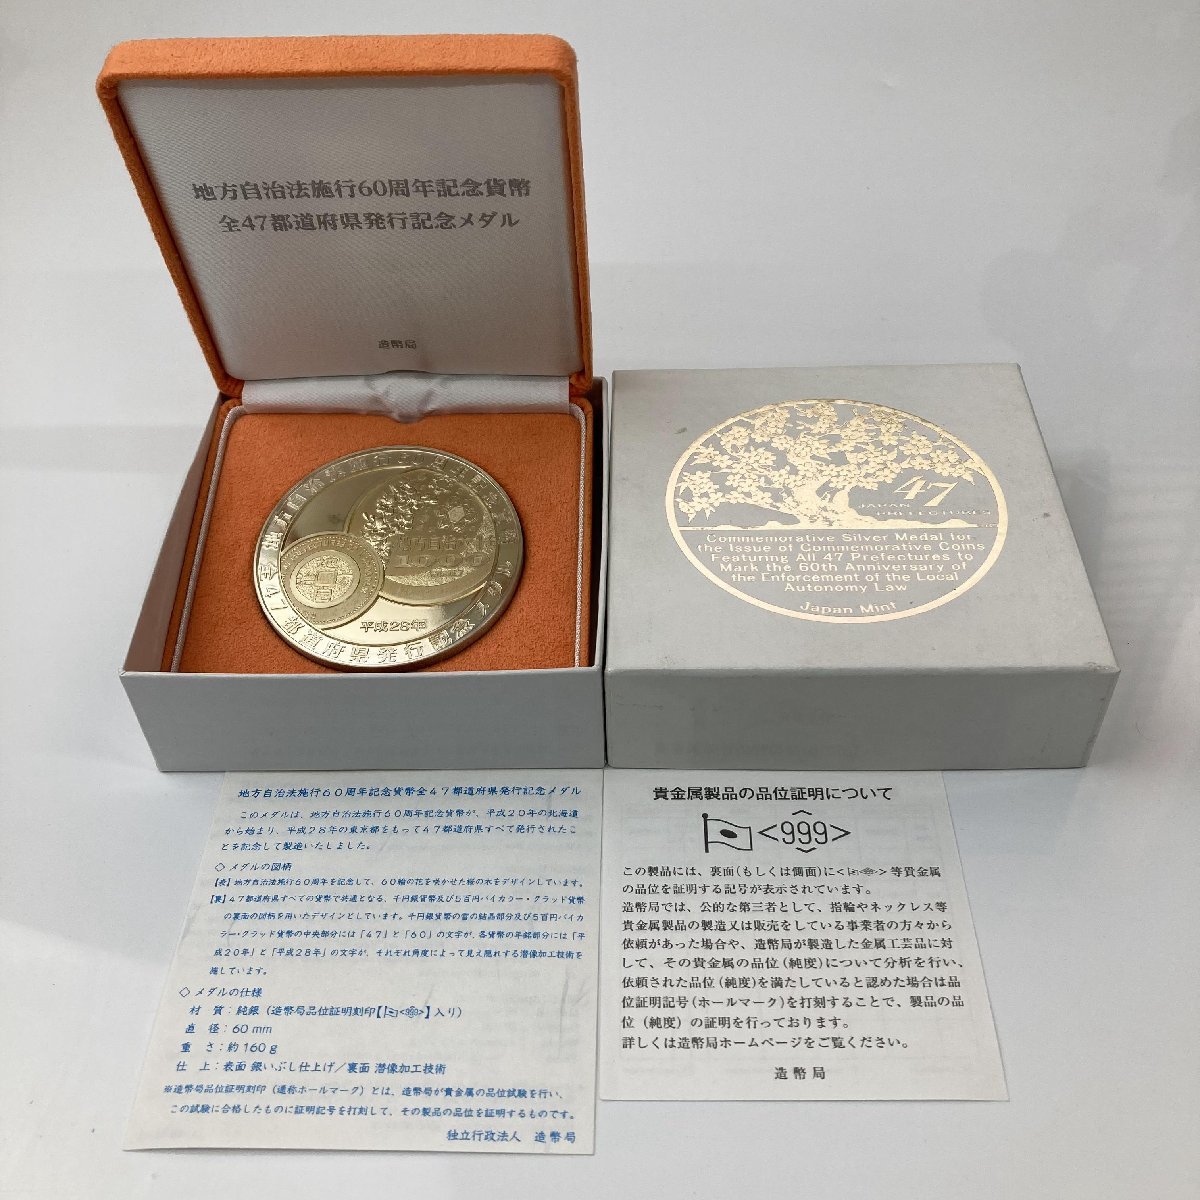 極美品 記念貨幣発行50周年記念メダル 純銀 160g 造幣局 ic.sch.id